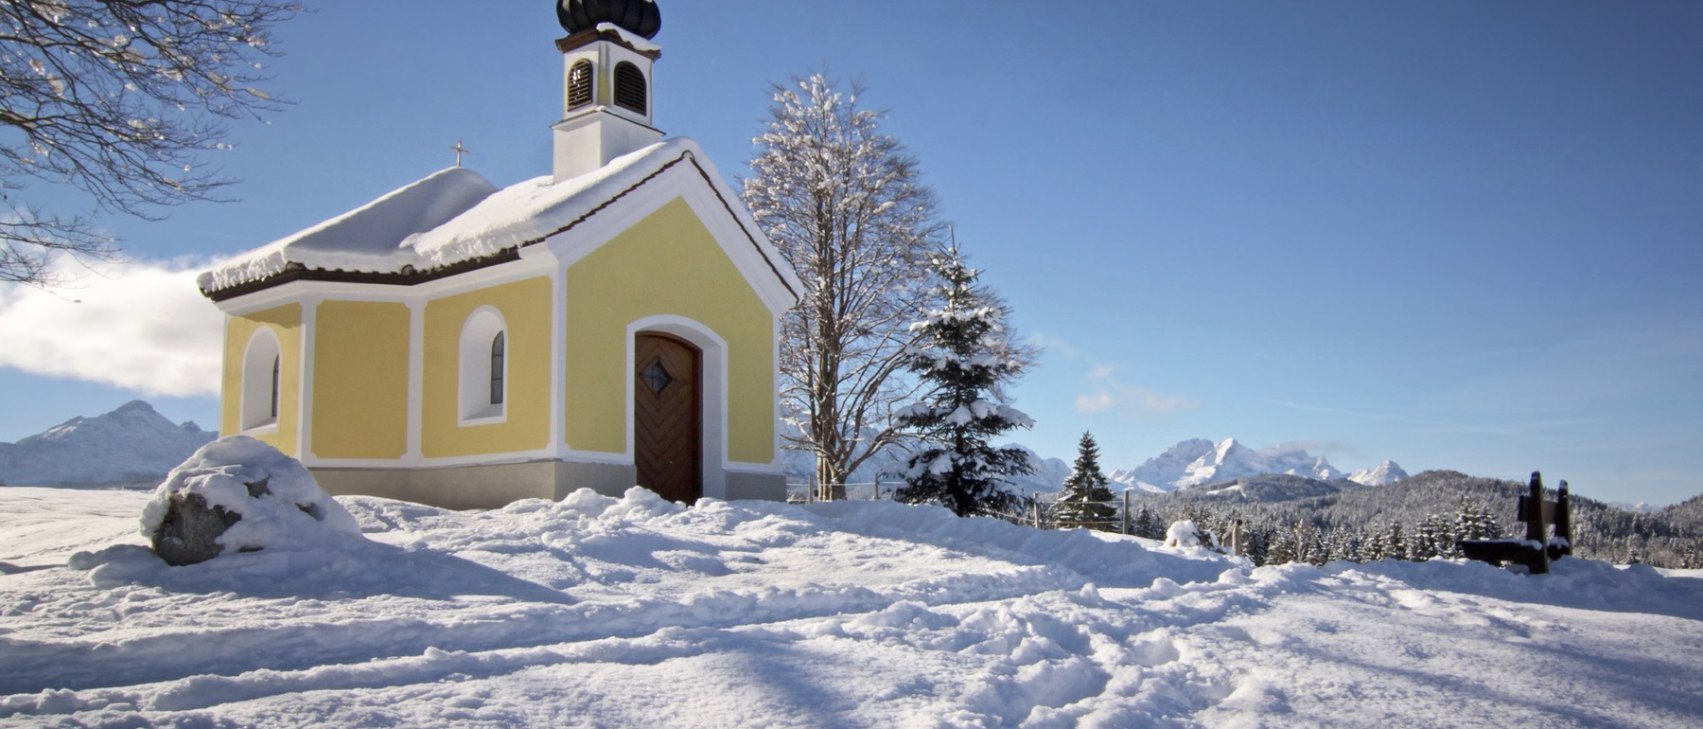 Kapell Maria Rast auf den Buckelwiesen bei Krün im Winter, © Alpenwelt Karwendel | Wera Tuma